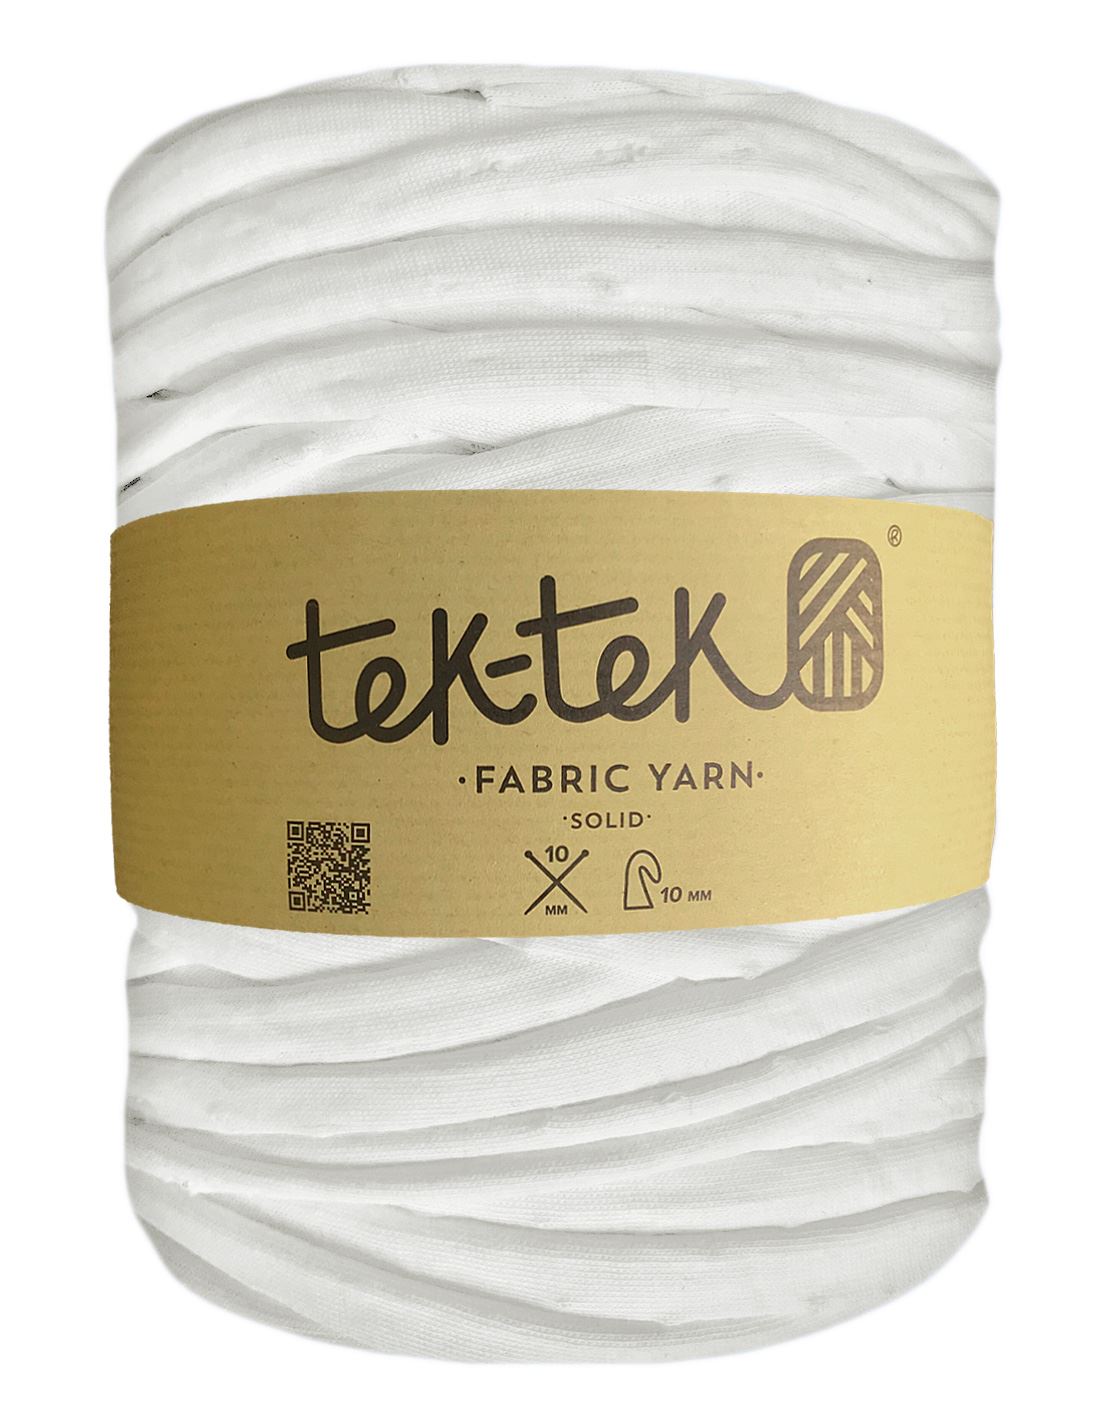 Snow white t-shirt yarn by Tek-Tek (100-120m)